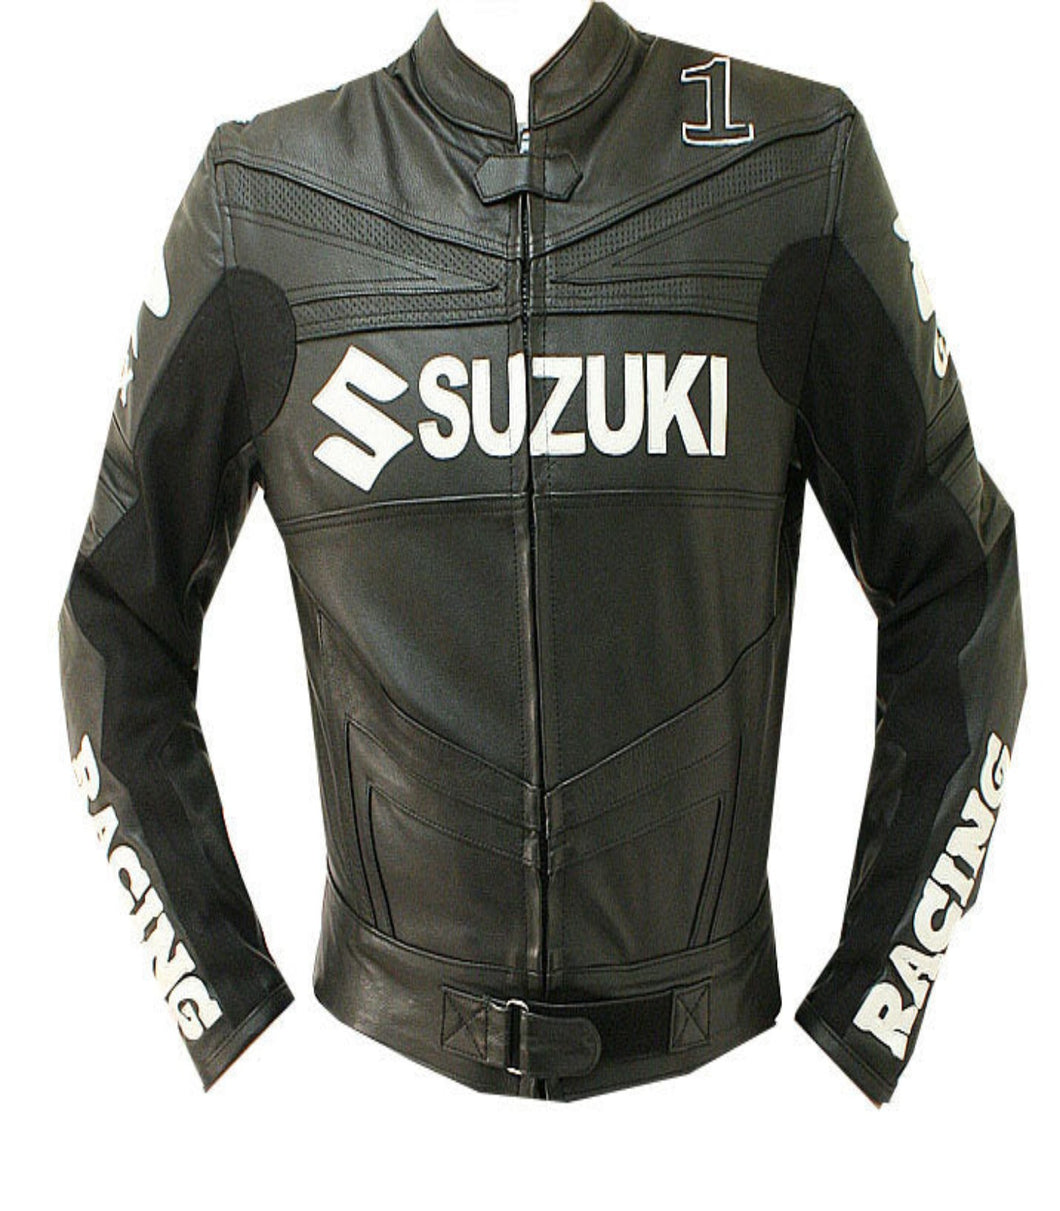 Suzuki Black Leather Biker Jacket